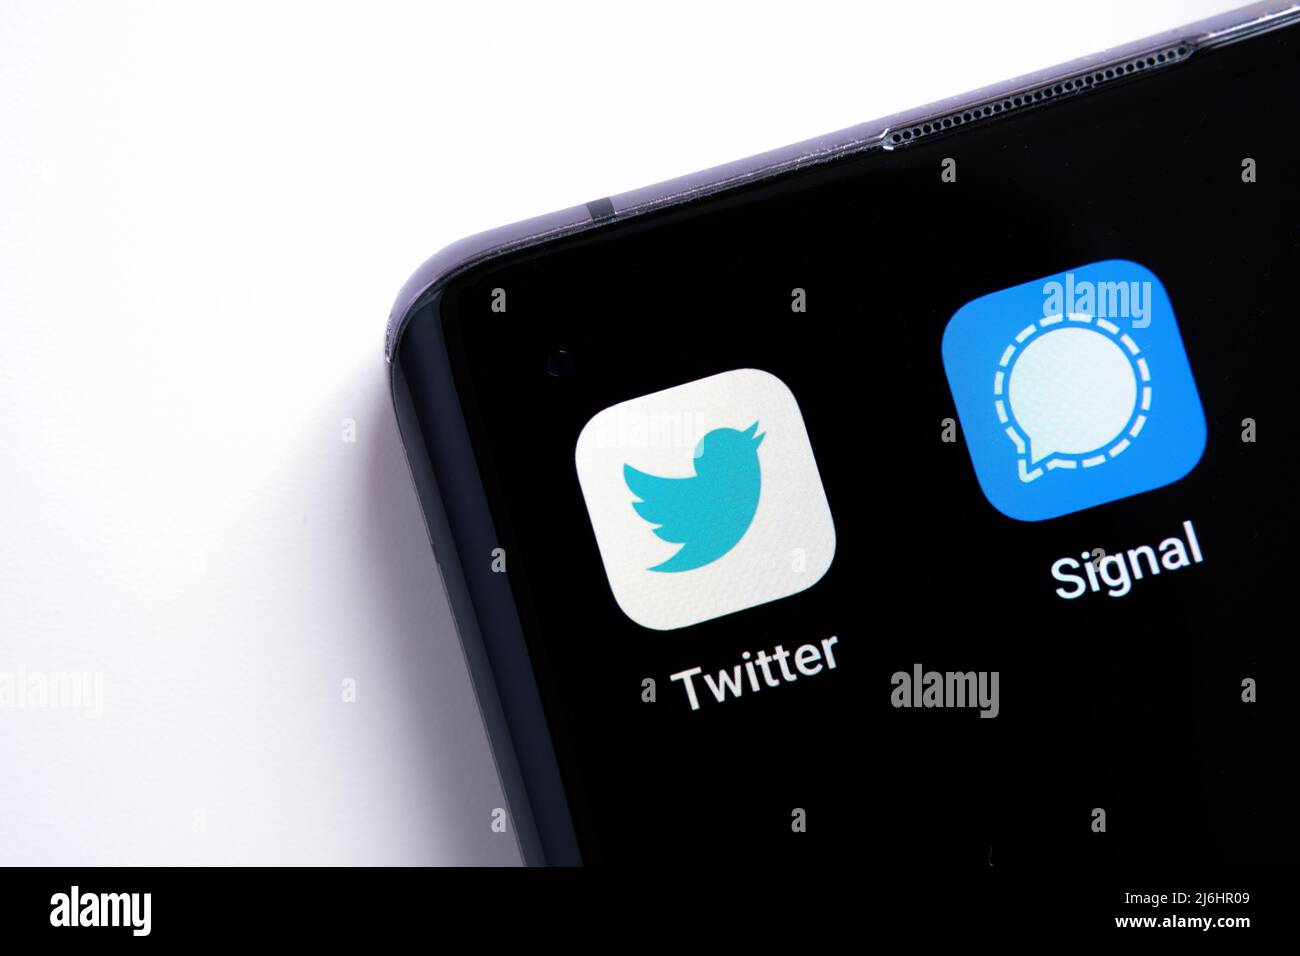 Le coin smartphone avec Twitter et les applications signal macro photo. Twitter prévoit d'utiliser le chiffrement comme dans l'application signal de messagerie. Stafford, Royaume-Uni Banque D'Images